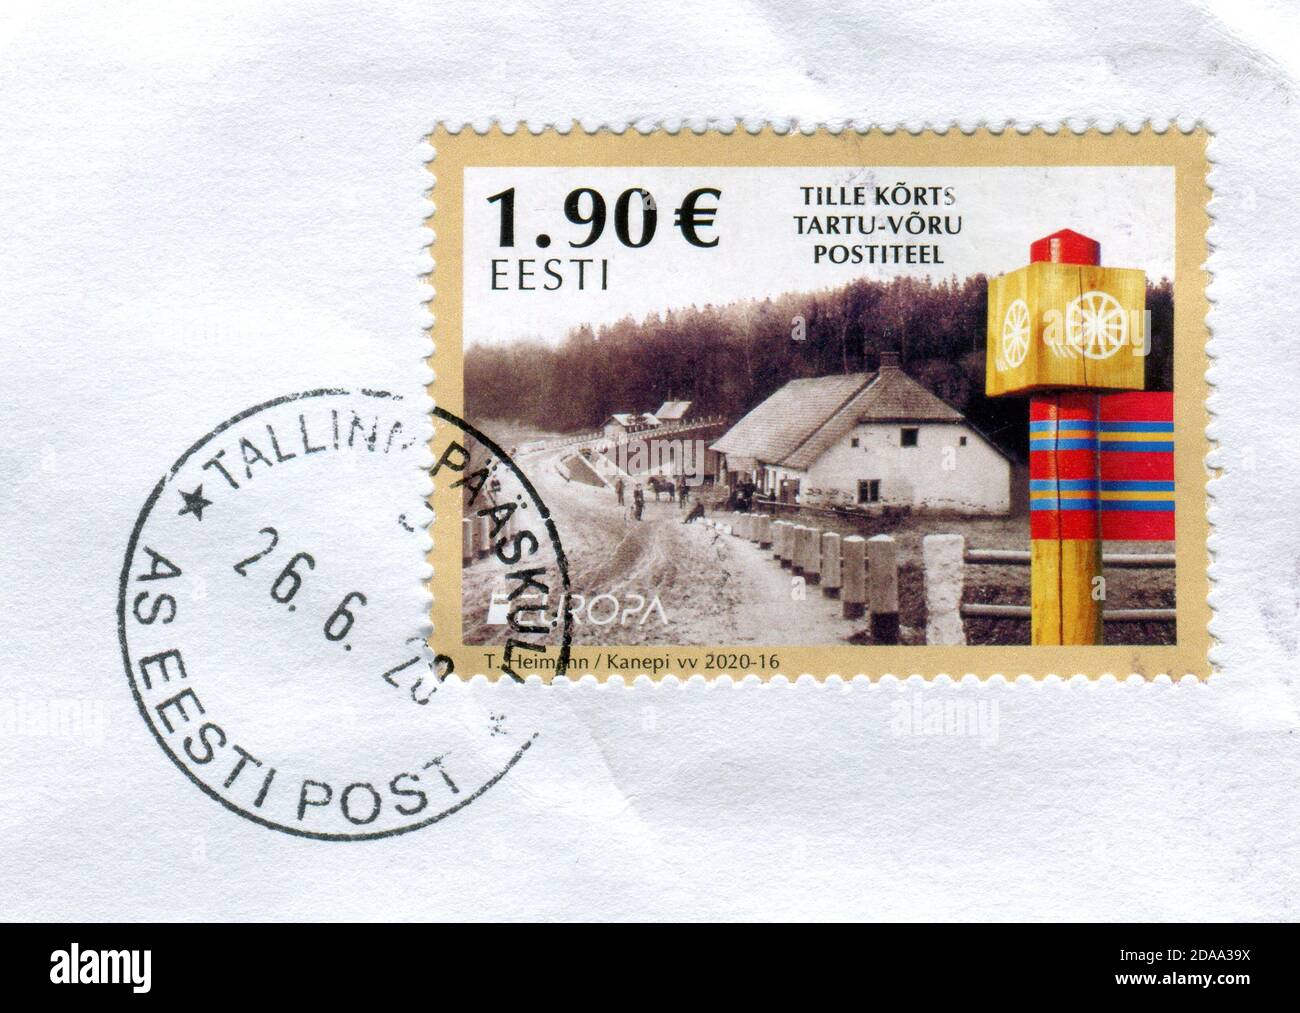 GOMEL, BÉLARUS, 11 NOVEMBRE 2020, Timbre imprimé en Estonie montre une image du postiteel de Tille korts tartu-voru, vers 2020. Banque D'Images